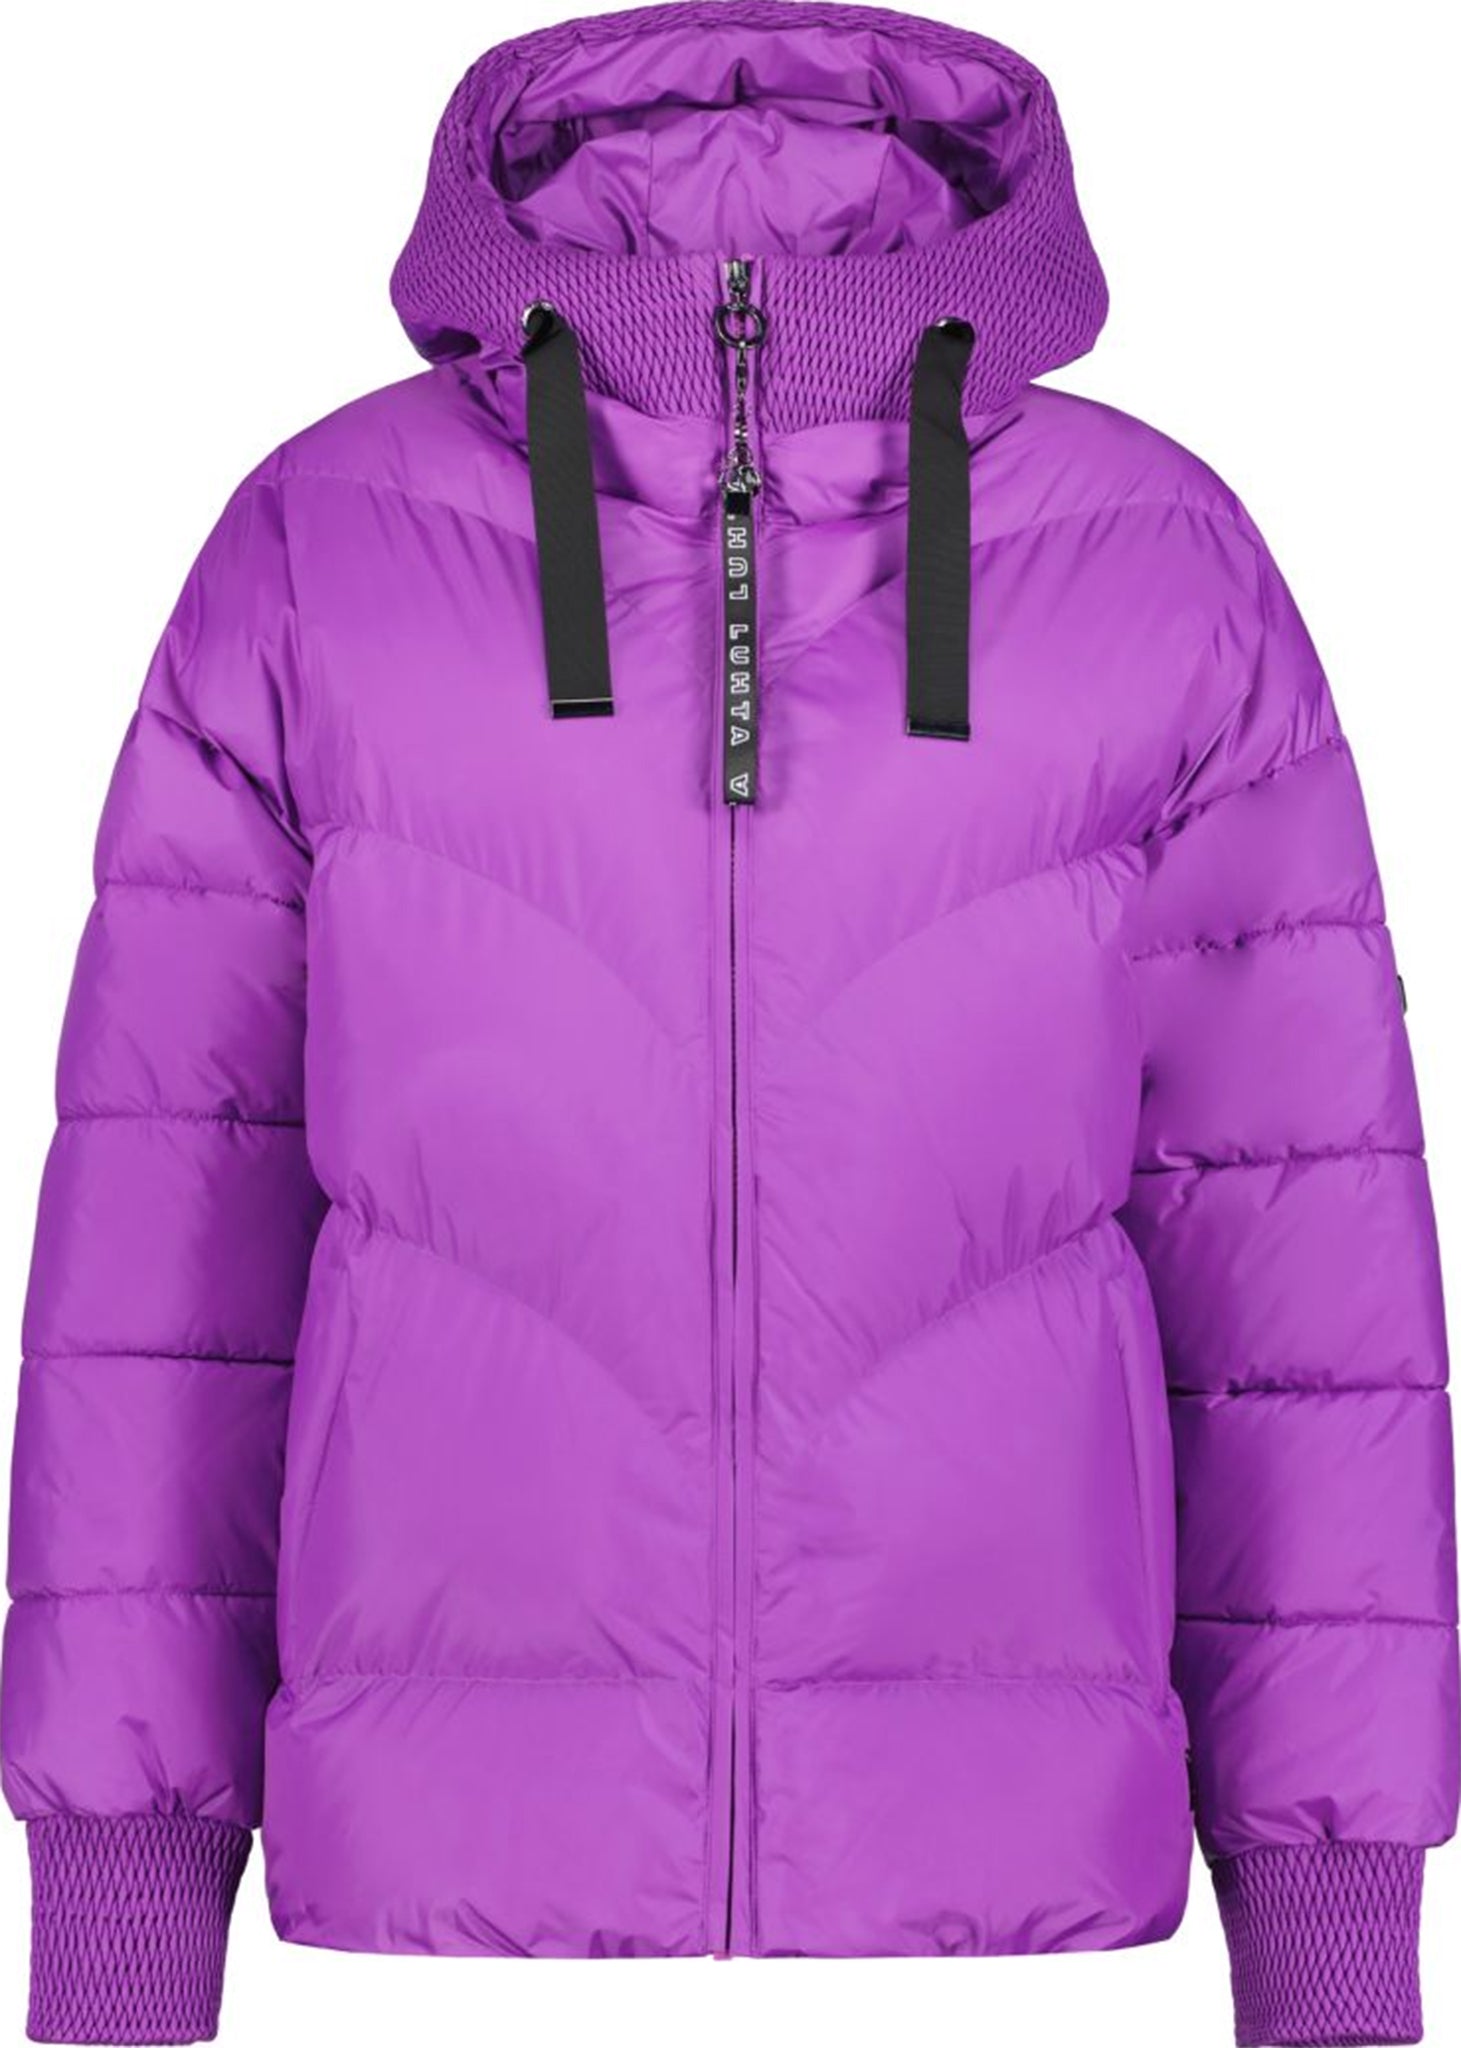 Lukka Lux Women's Fleece Lined Hoodie Purple Cozy Warm Jacket XL